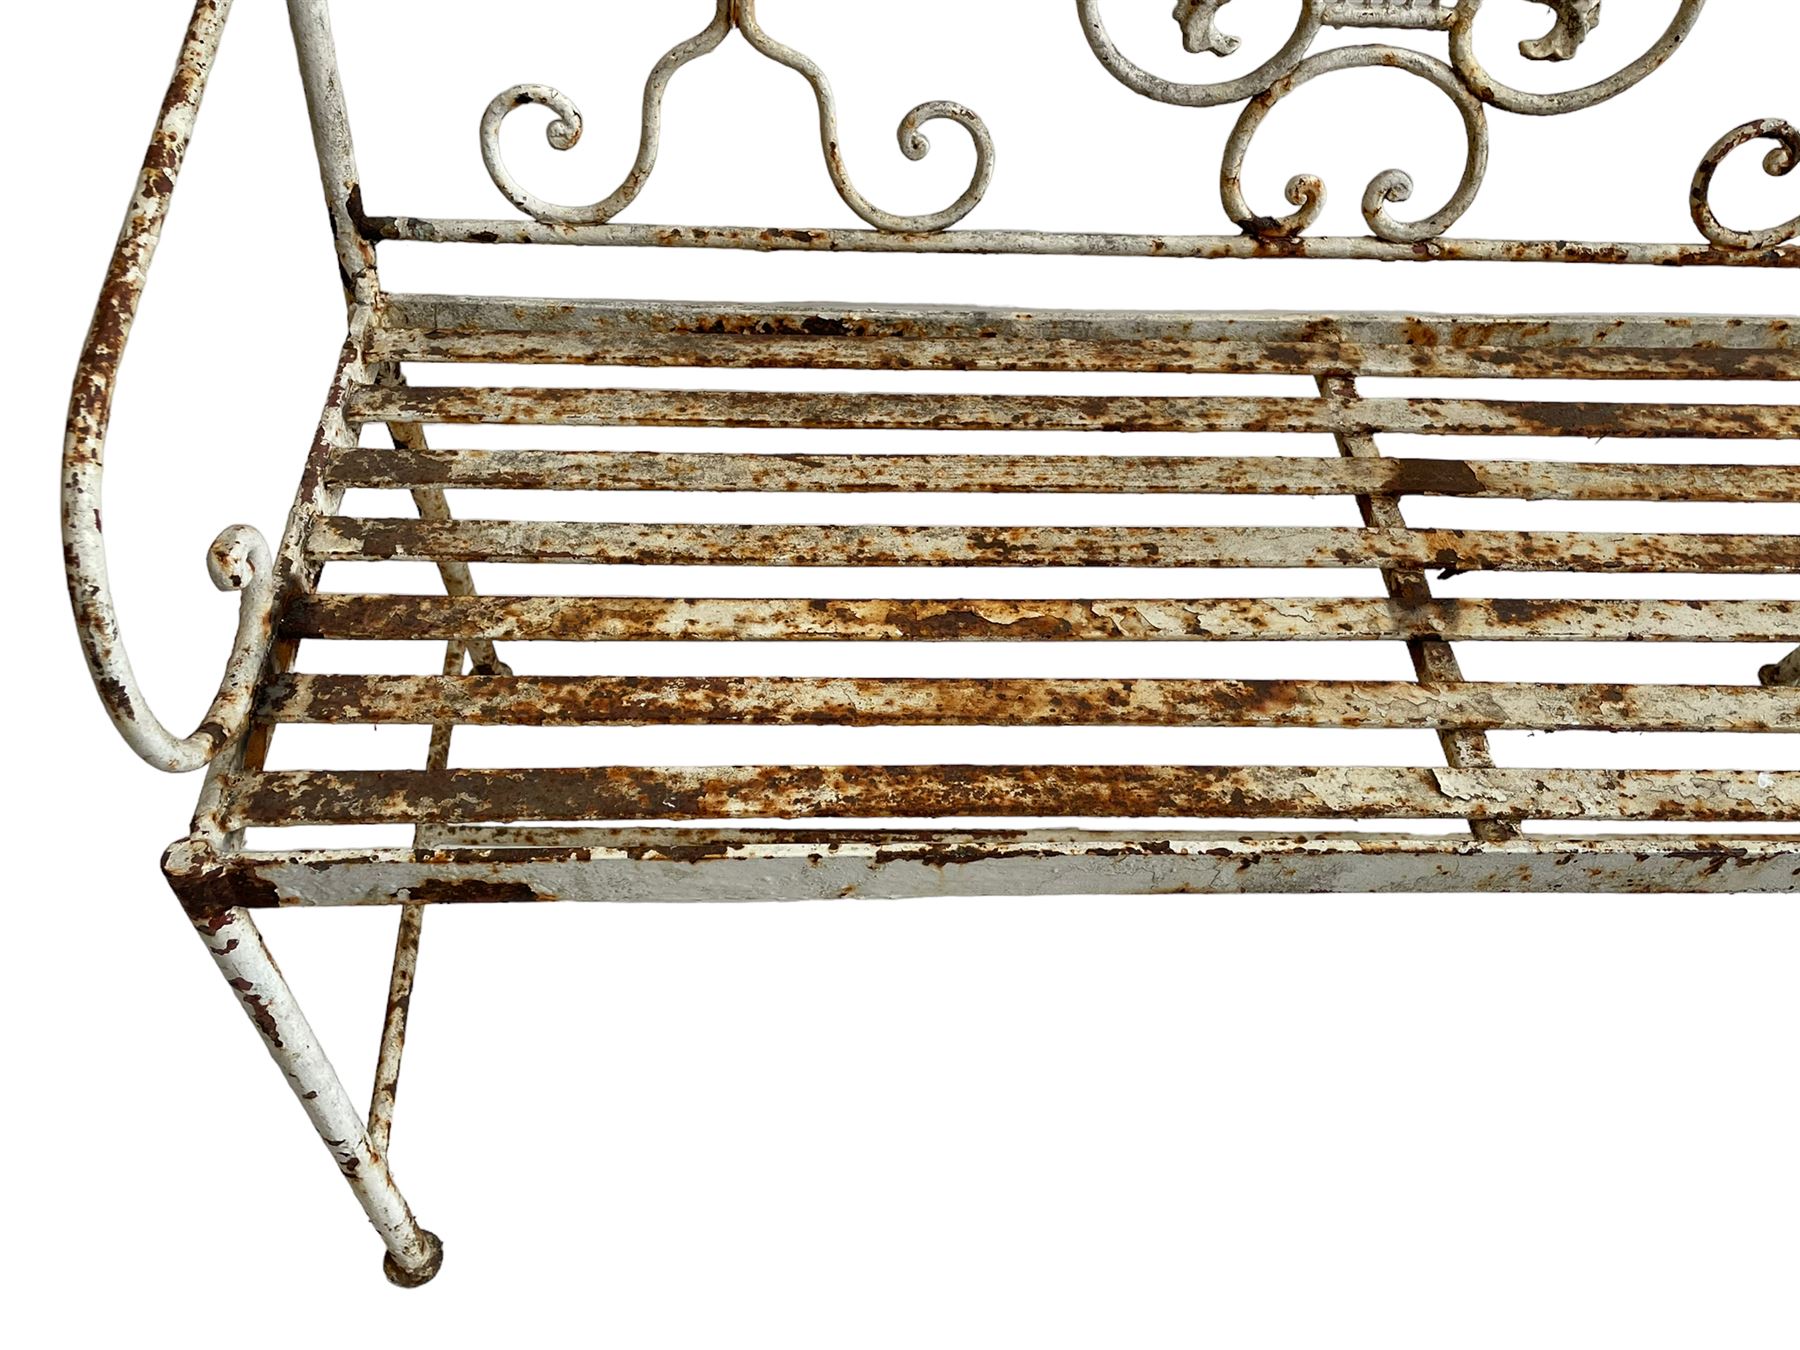 Regency design wrought metal garden bench - Image 4 of 7